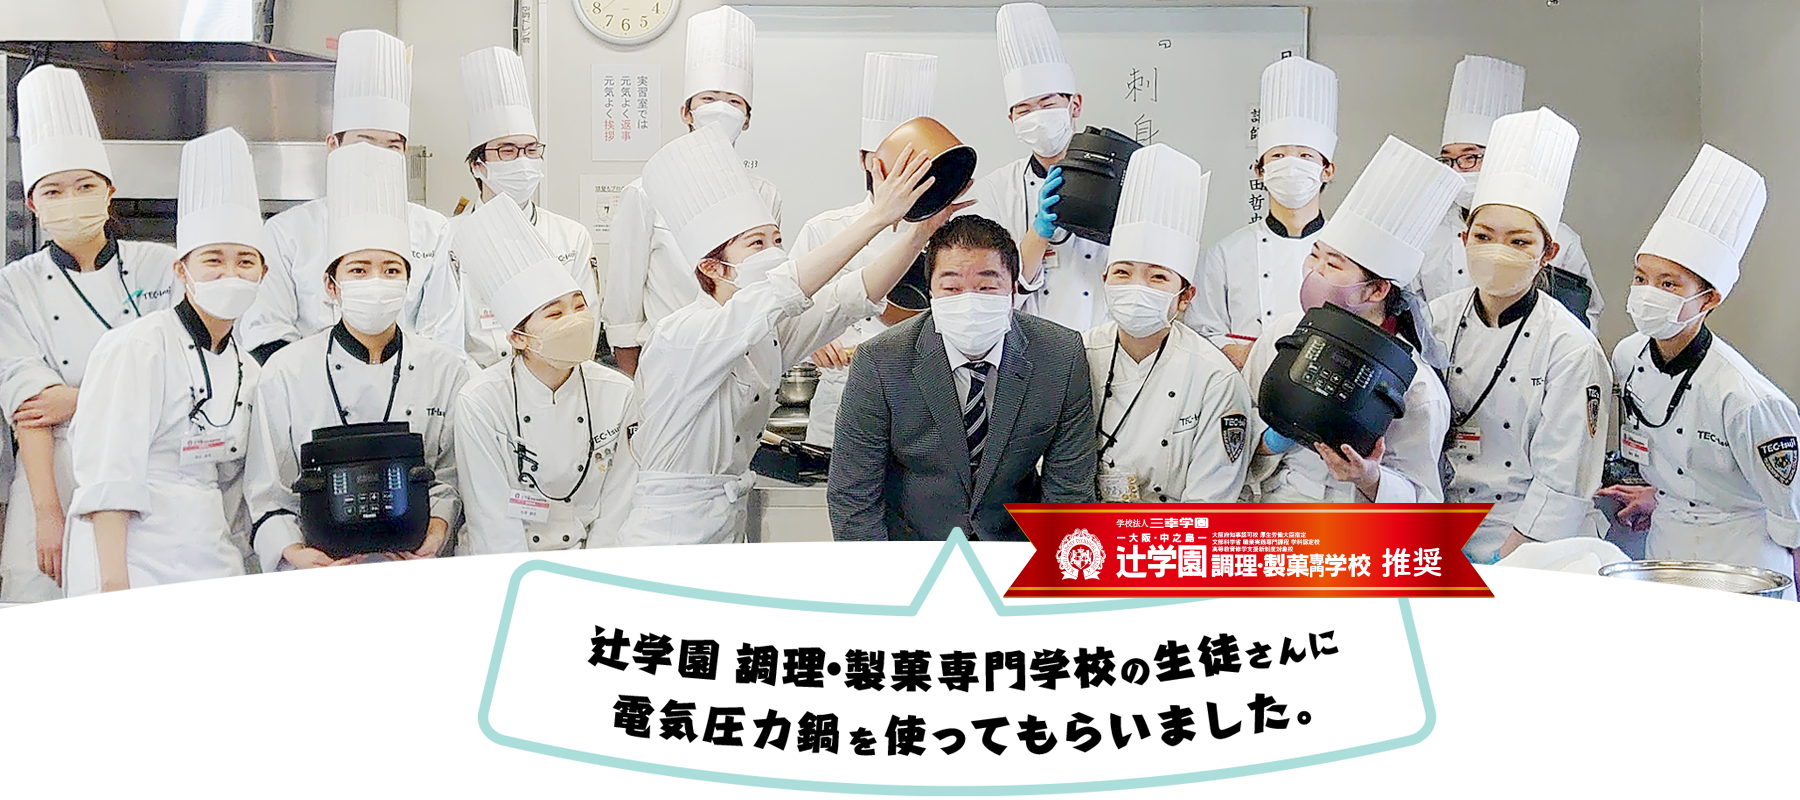 辻学園 調理・製菓専門学校の生徒さんに電気圧力鍋を使ってもらいました。